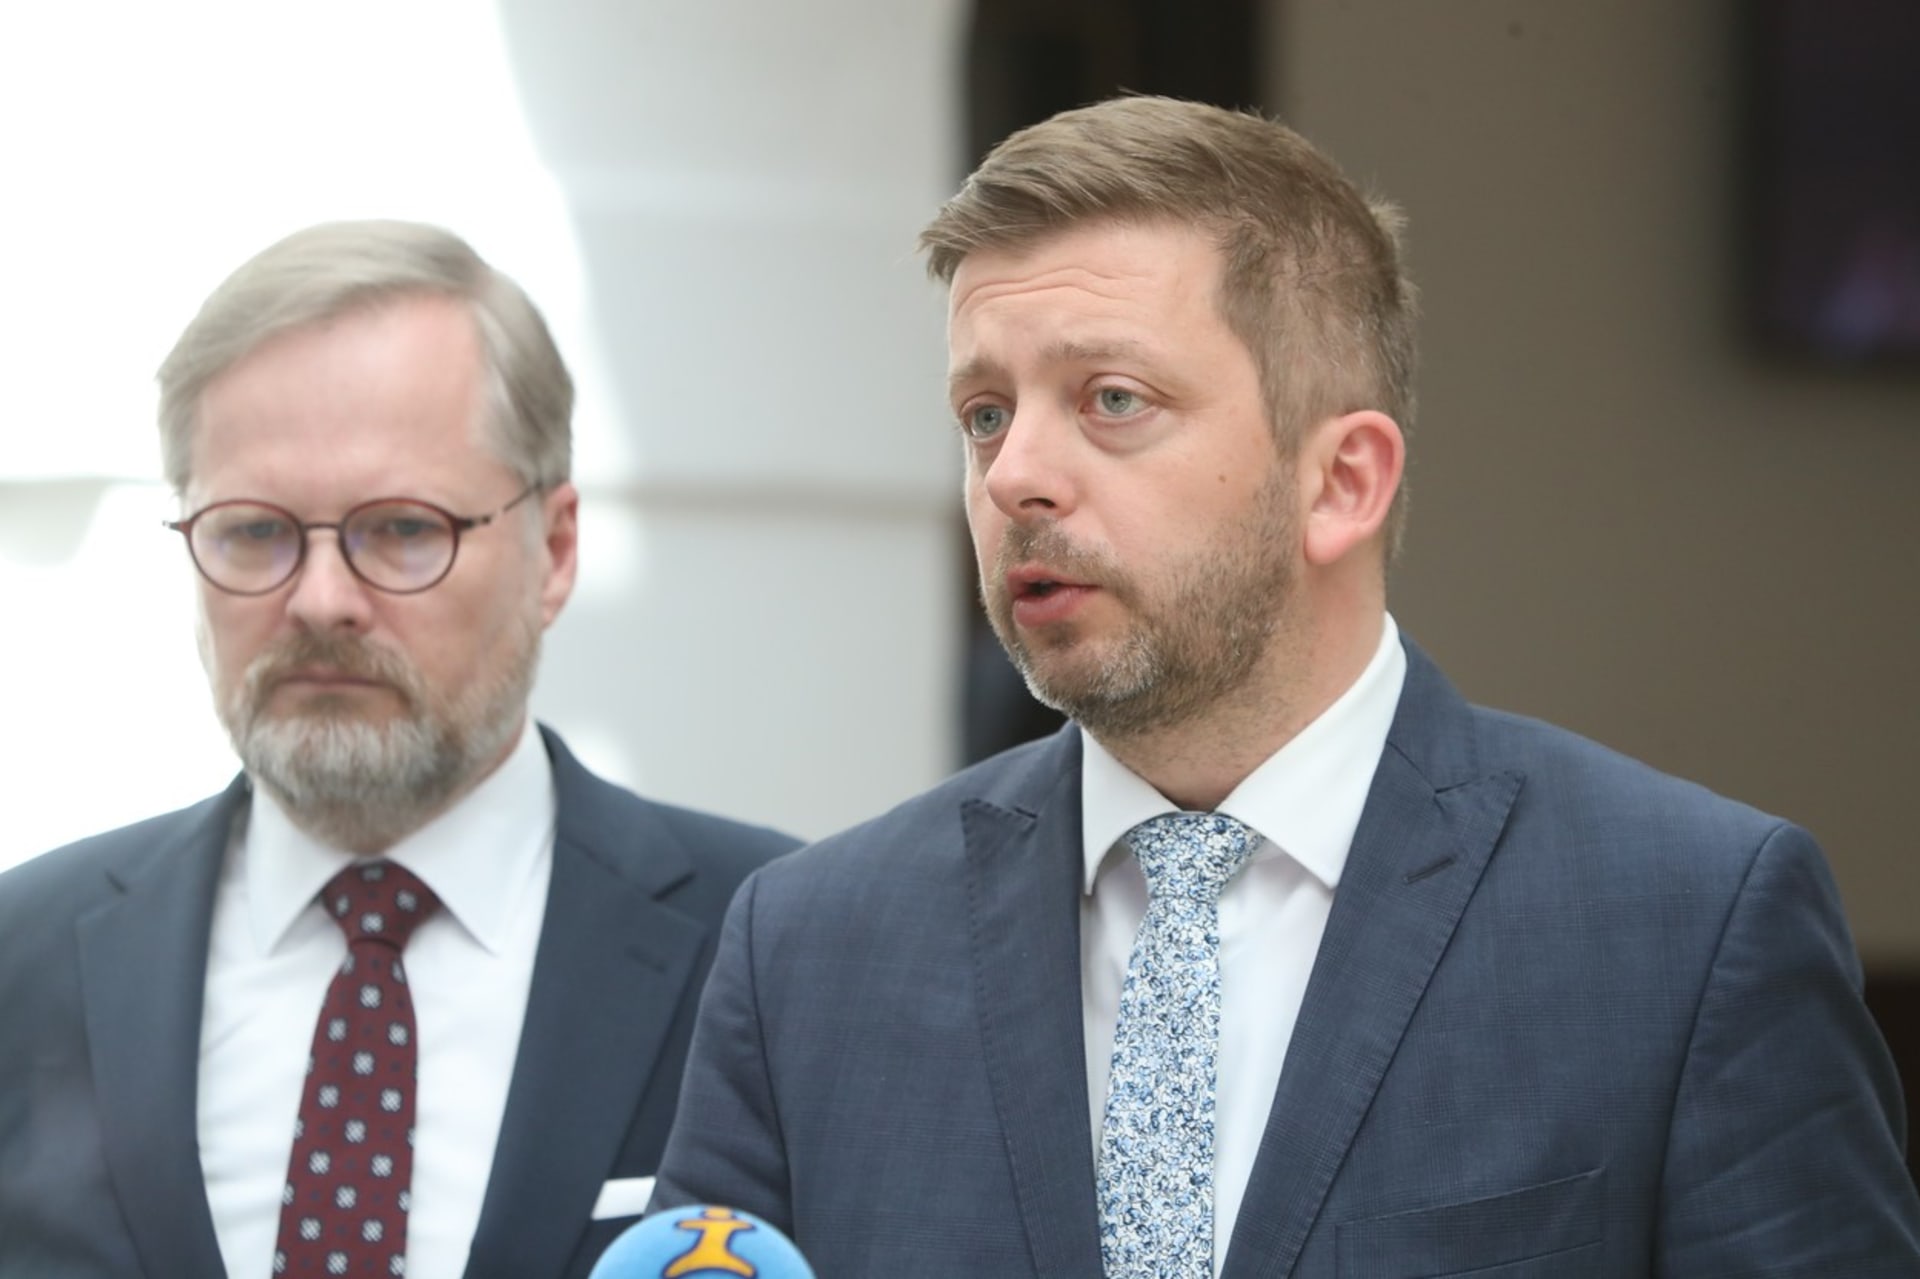 Premiér Petr Fiala (ODS) a ministr vnitra Vít Rakušan (STAN)